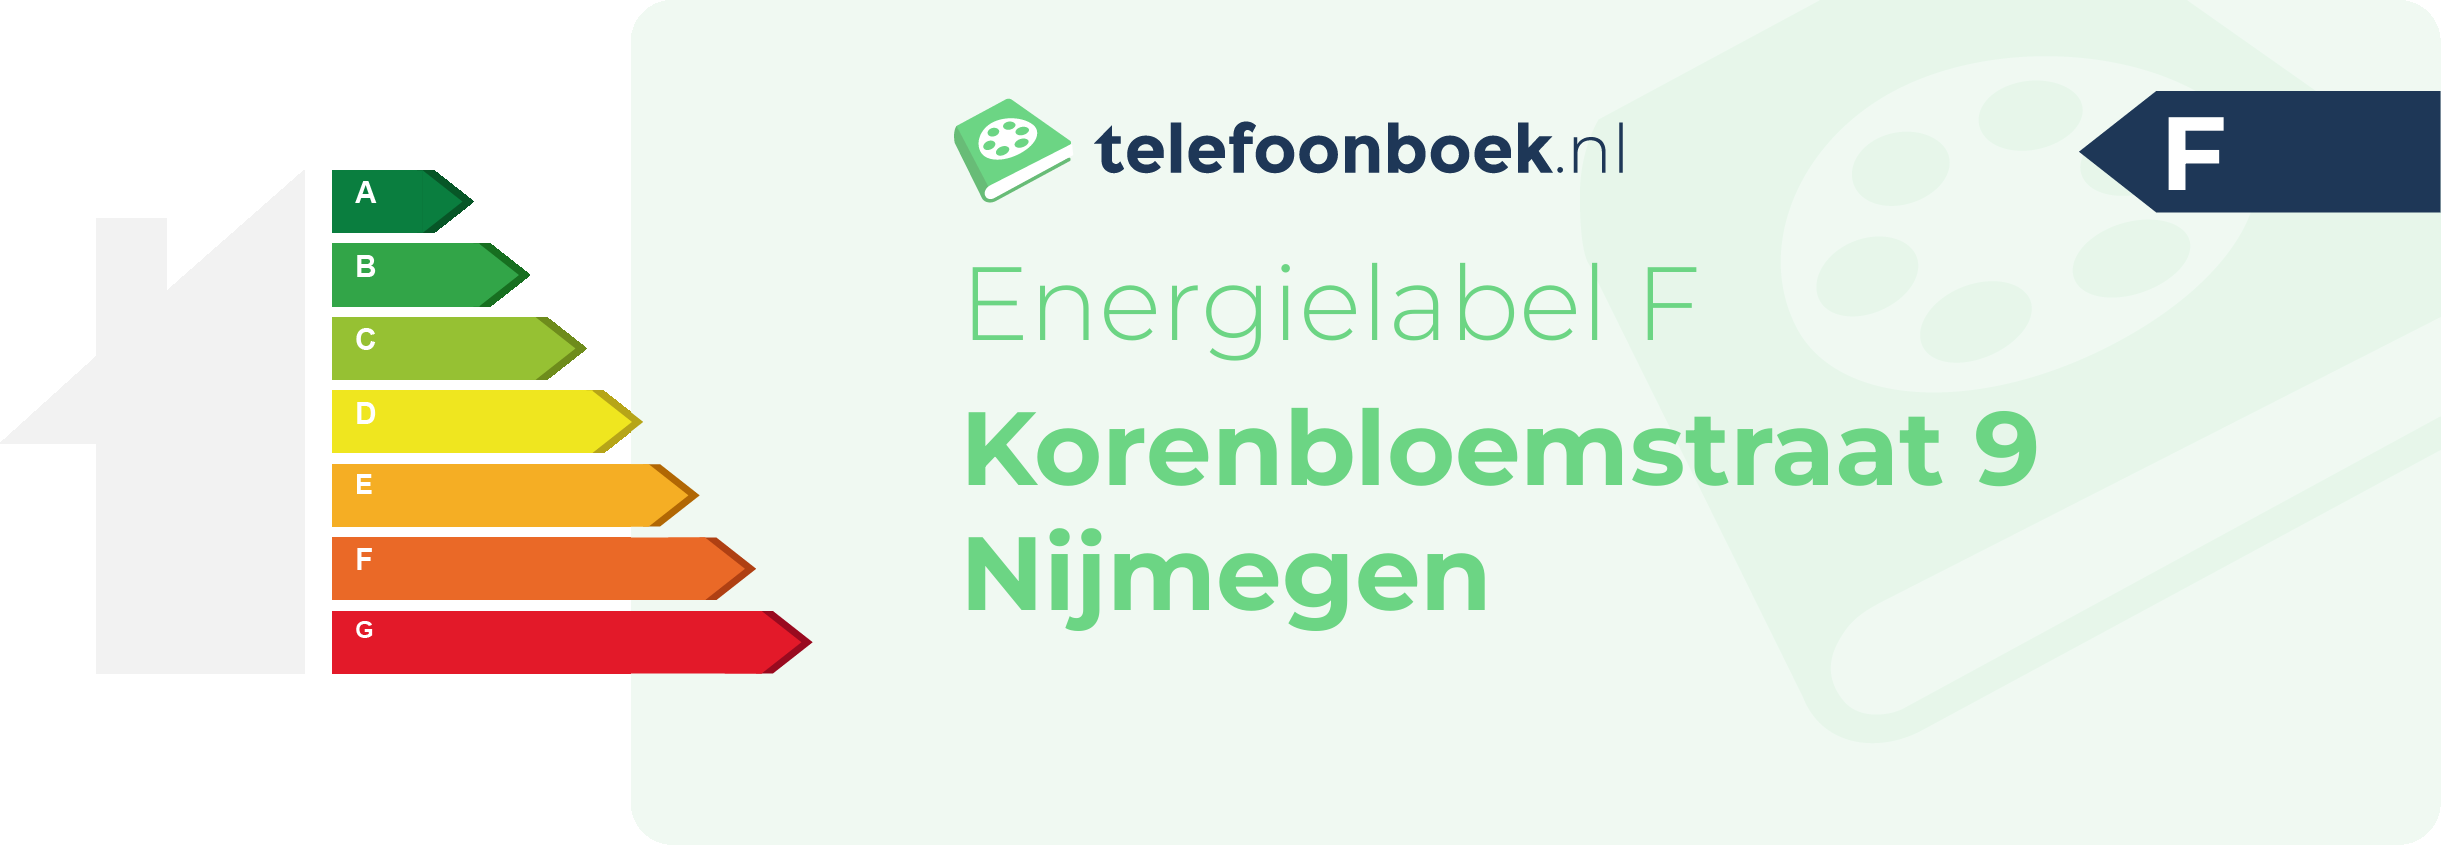 Energielabel Korenbloemstraat 9 Nijmegen